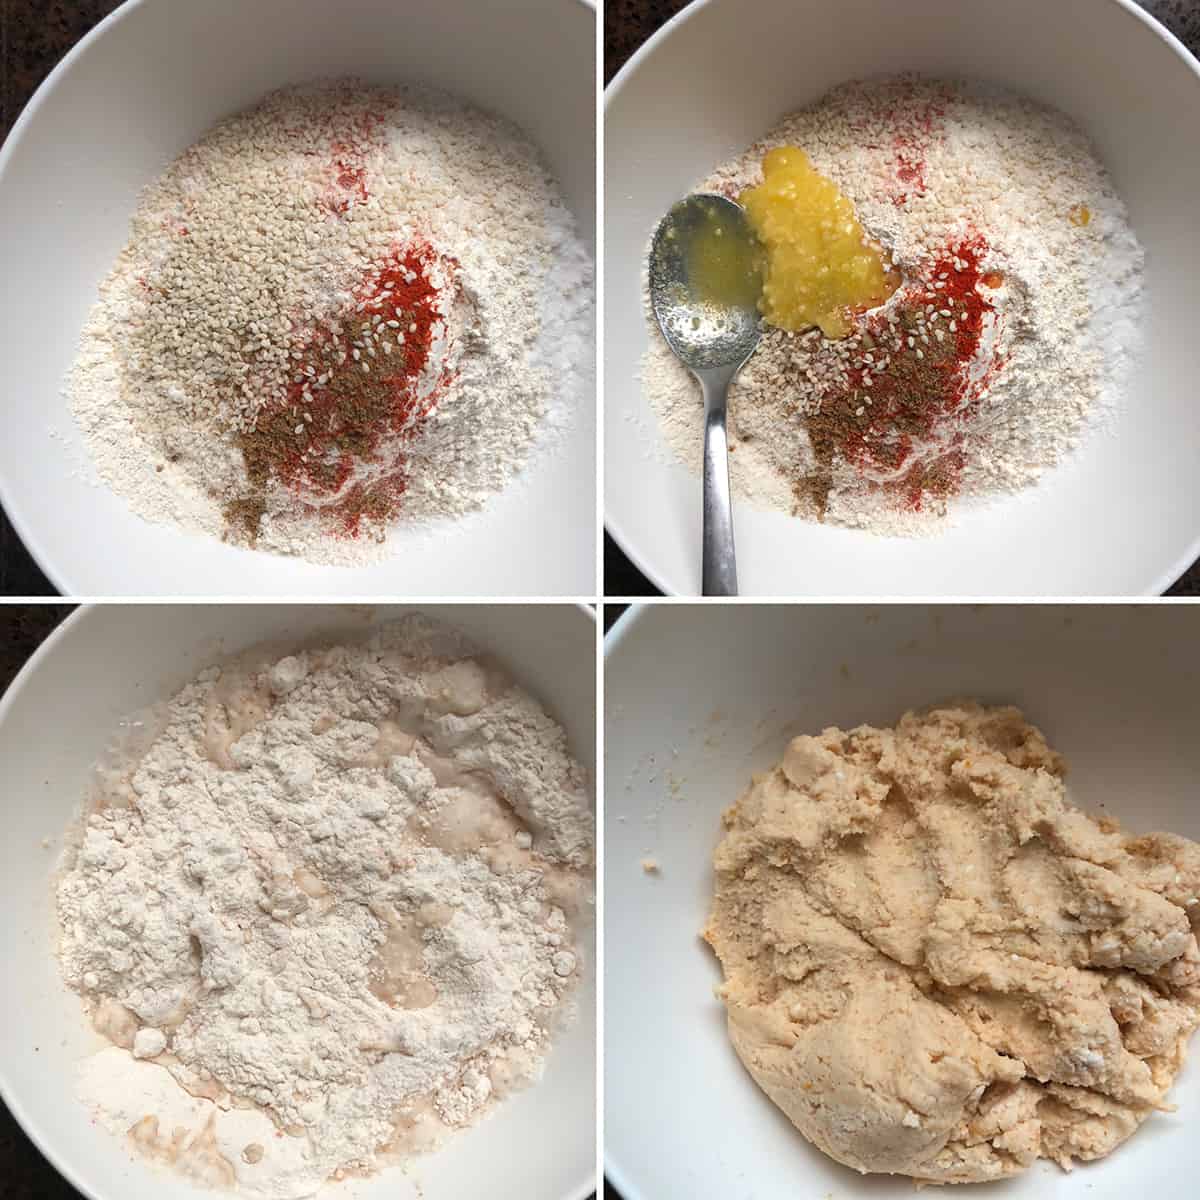 Photos showing the making of the murukku dough